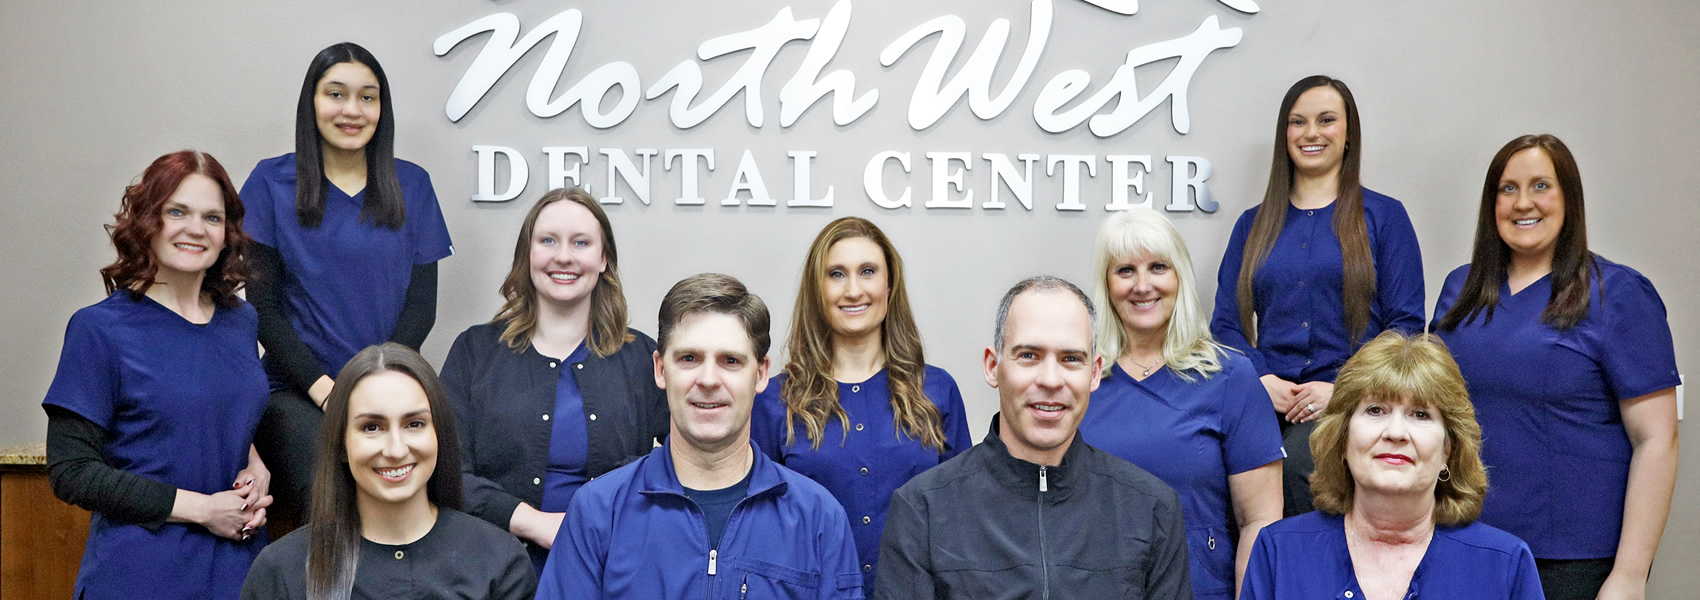 Our Team - Northwest Dental Center